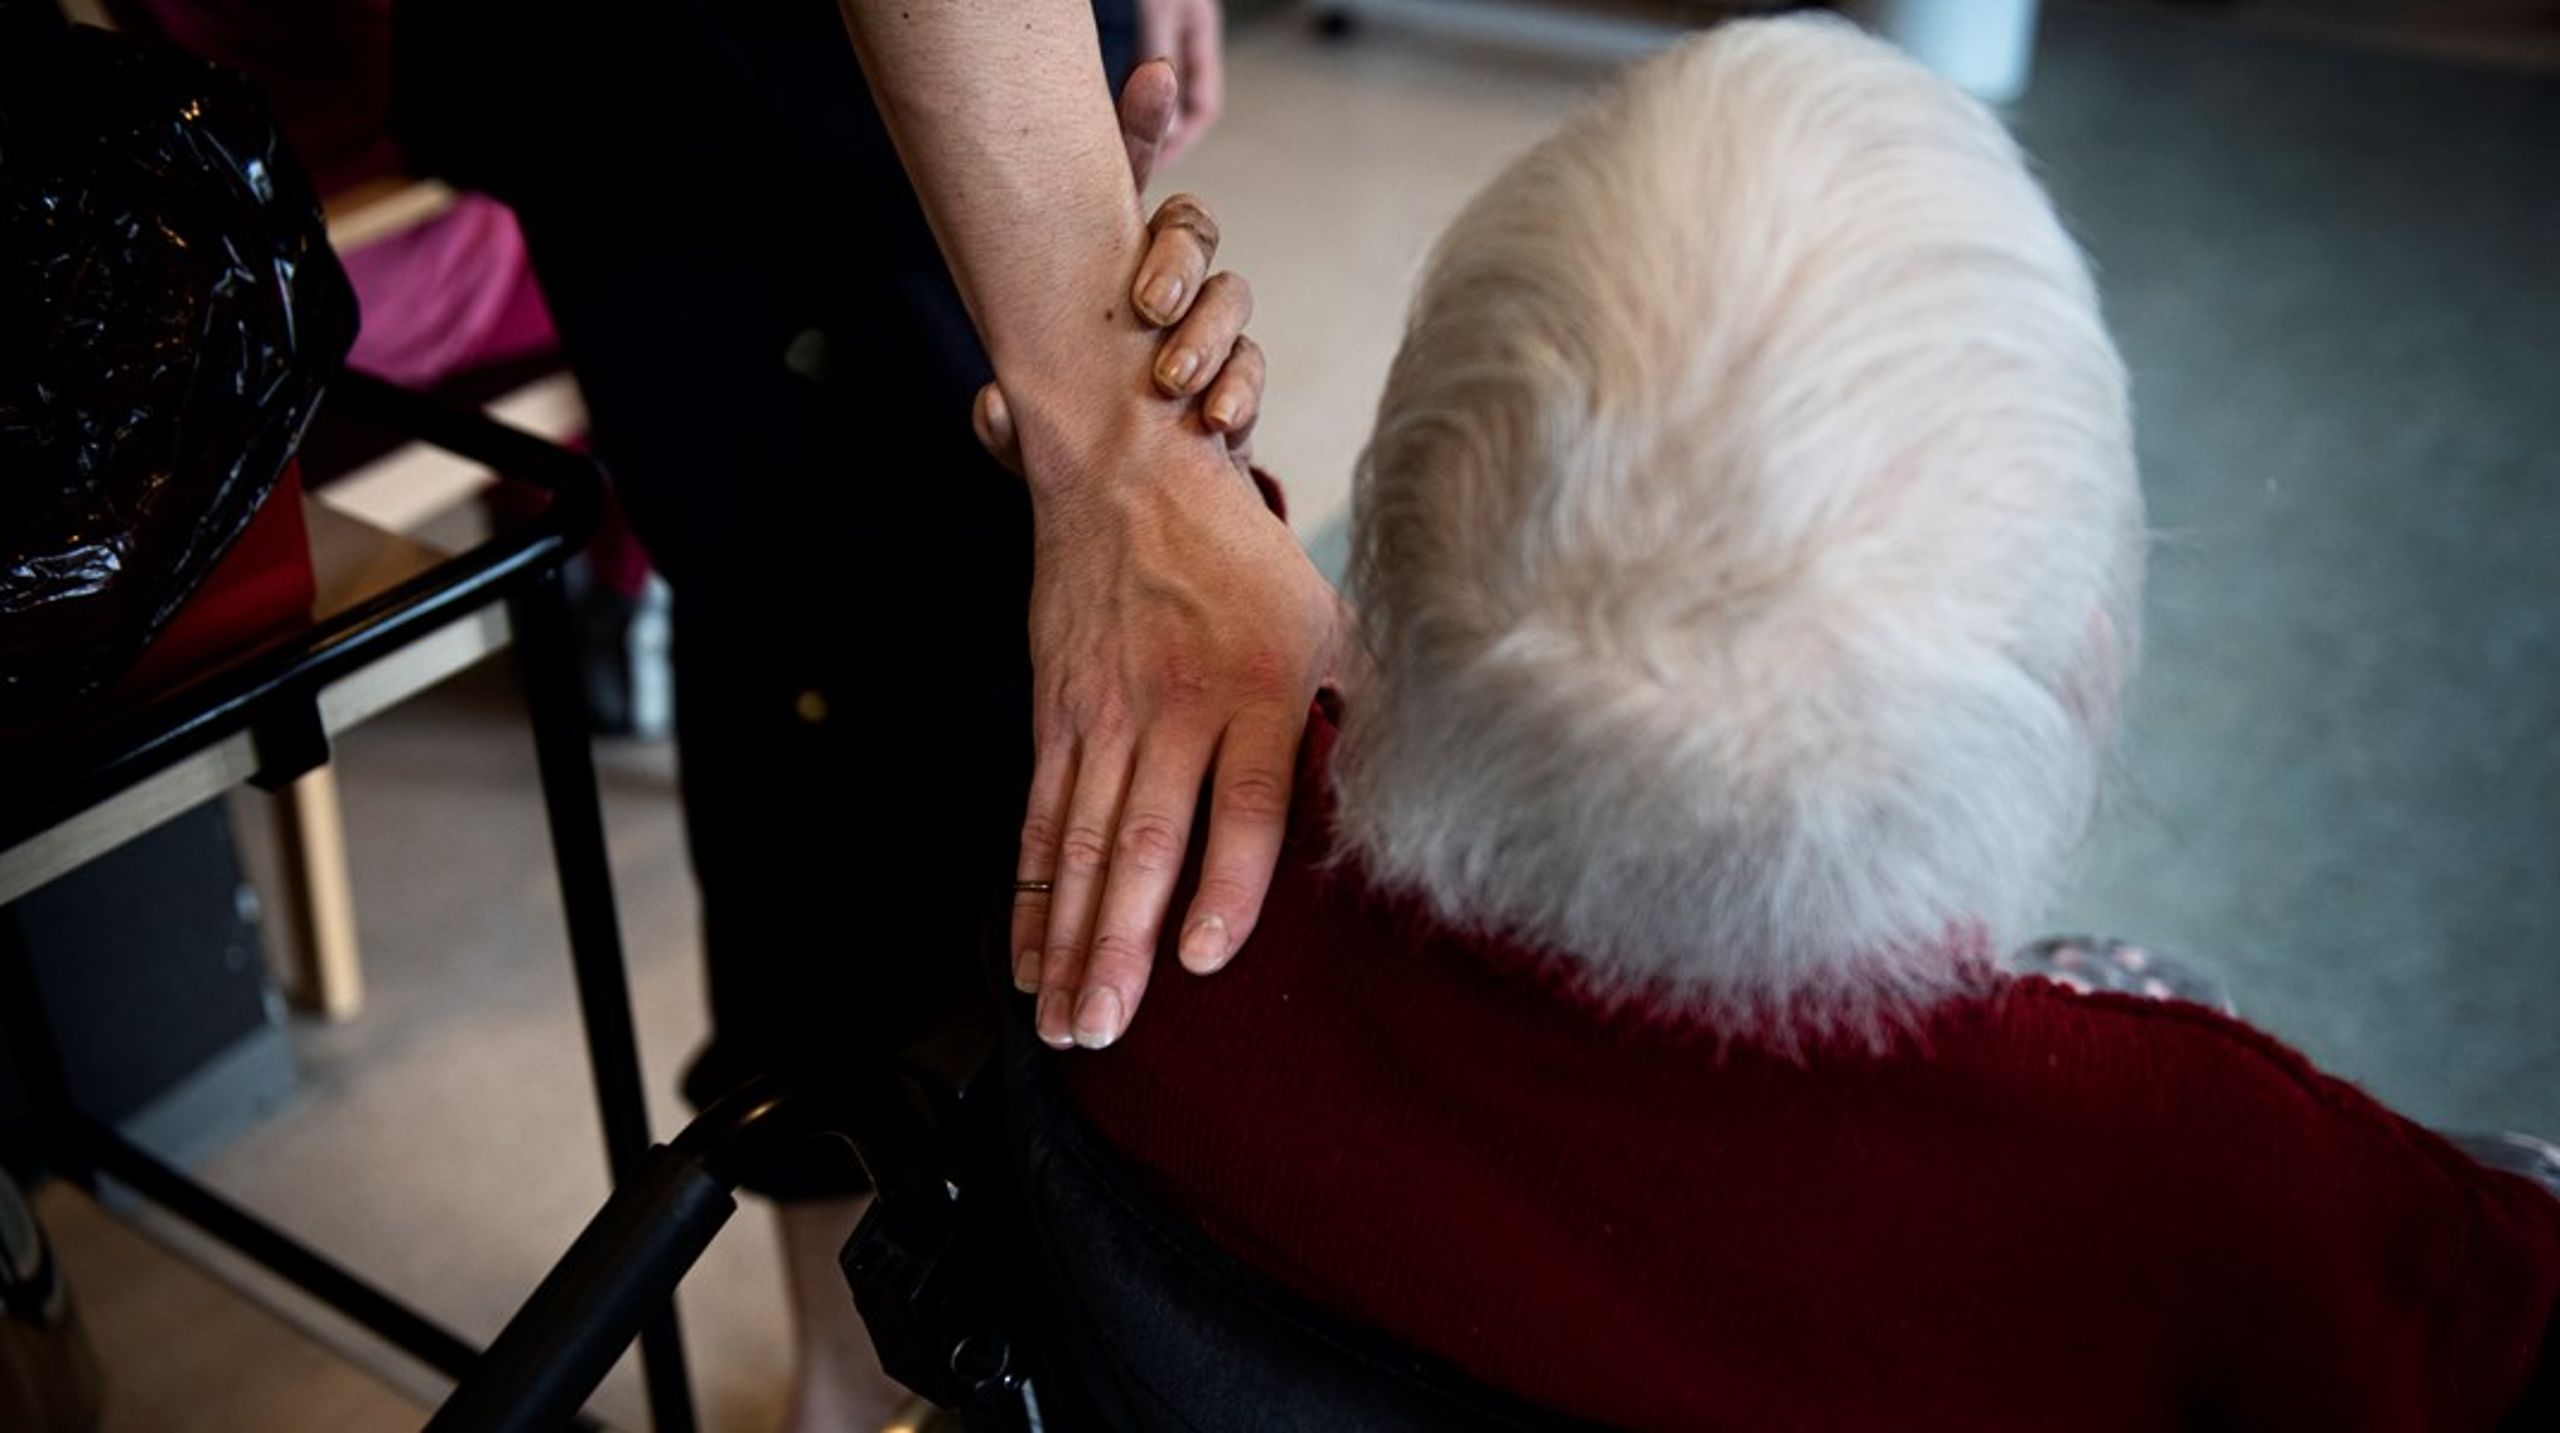 Omsorgs- og plejeforsikringer giver&nbsp;flere ældre adgang til at supplere den offentlige ældrepleje. På den måde værner vi samtidig om den universelle kernevelfærd, skriver Kent Damsgaard.